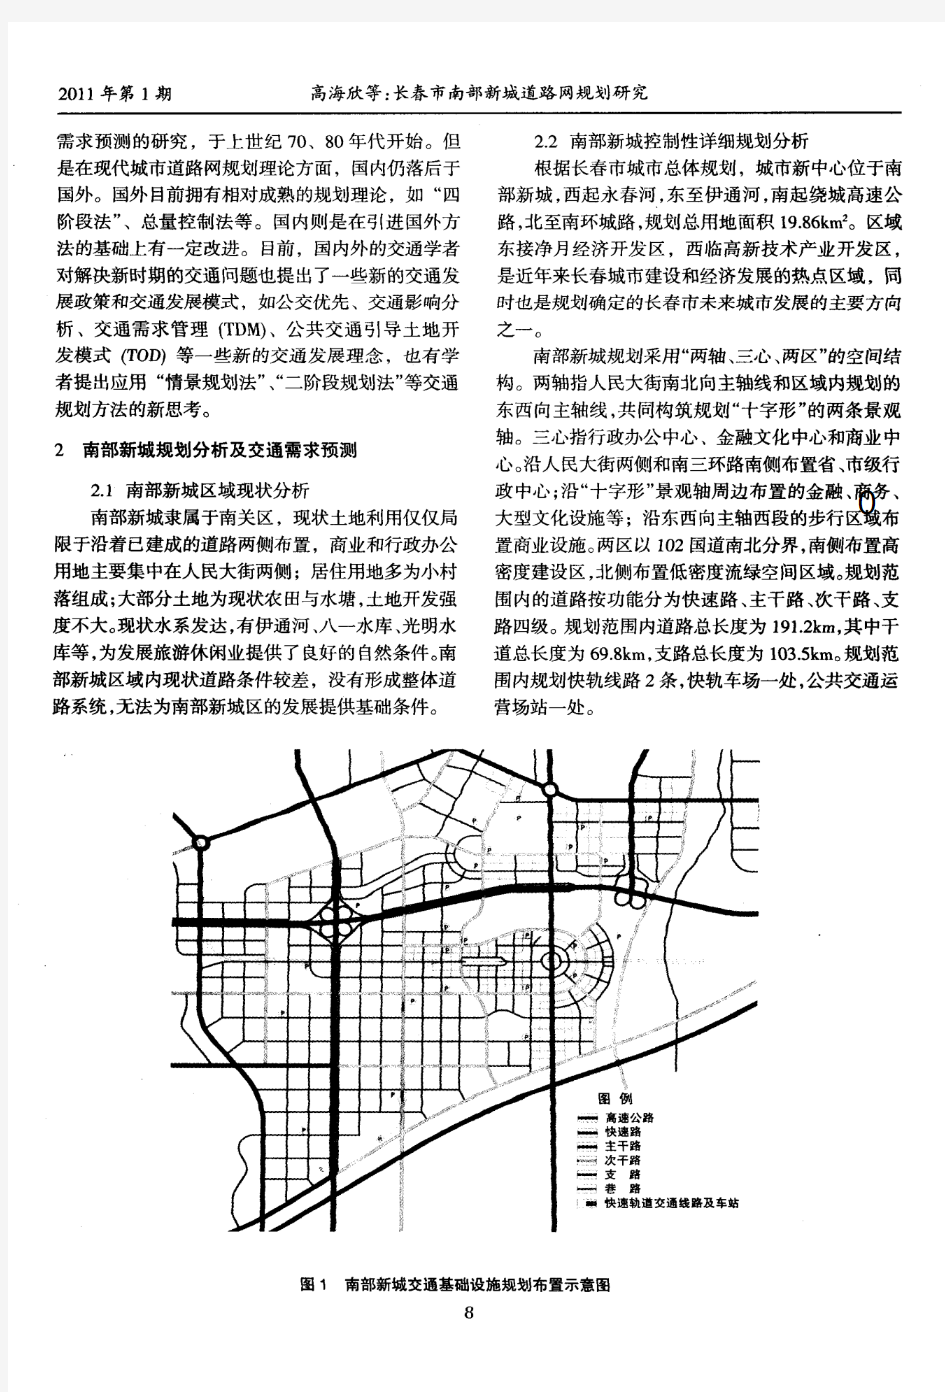 长春市南部新城道路网规划研究